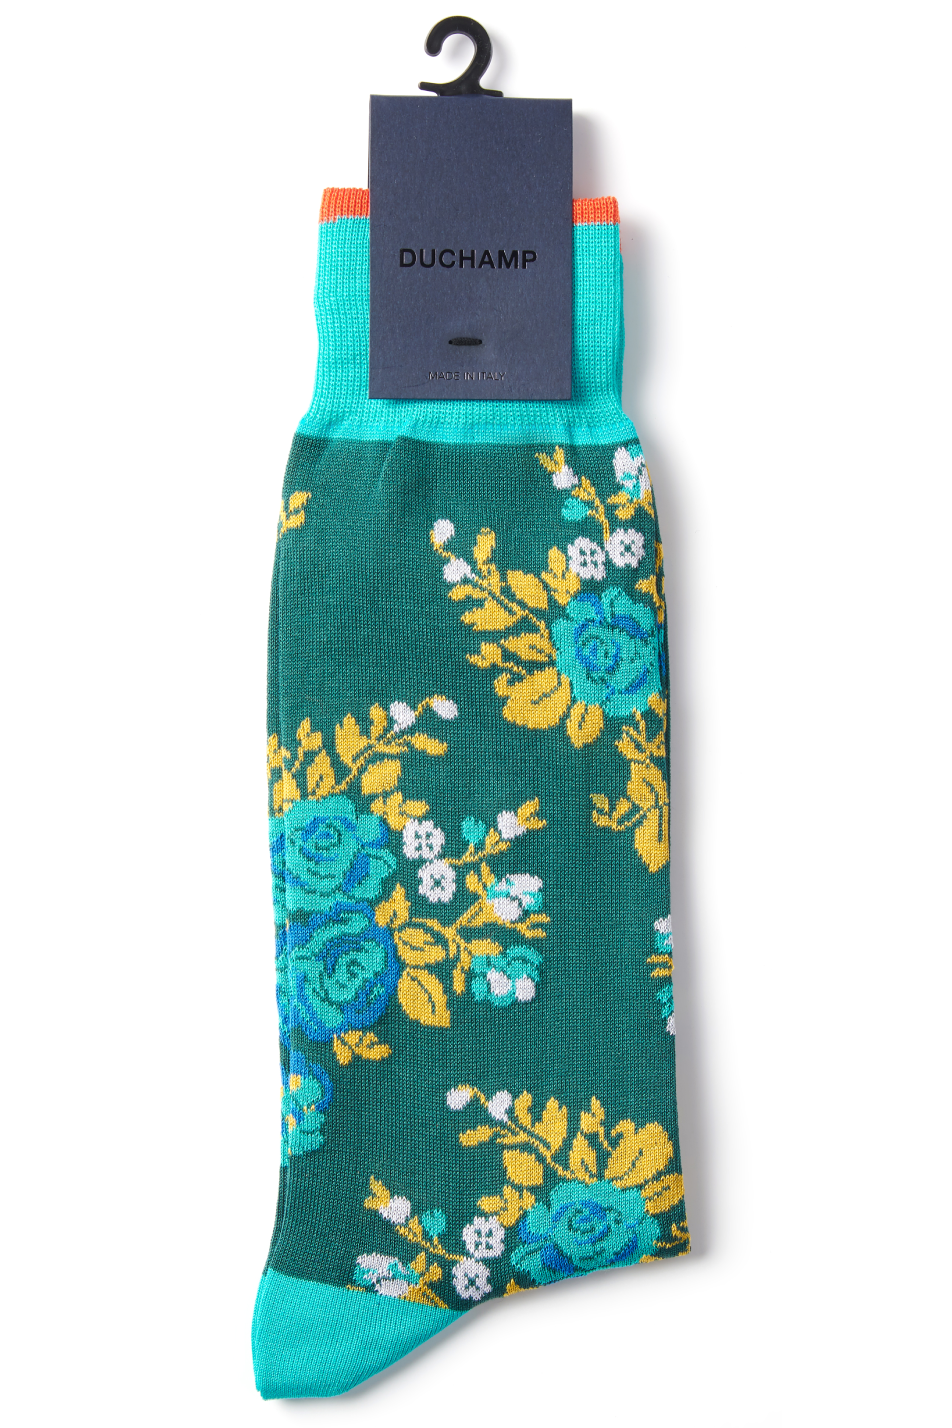 Duchamp Men's Rose Sock